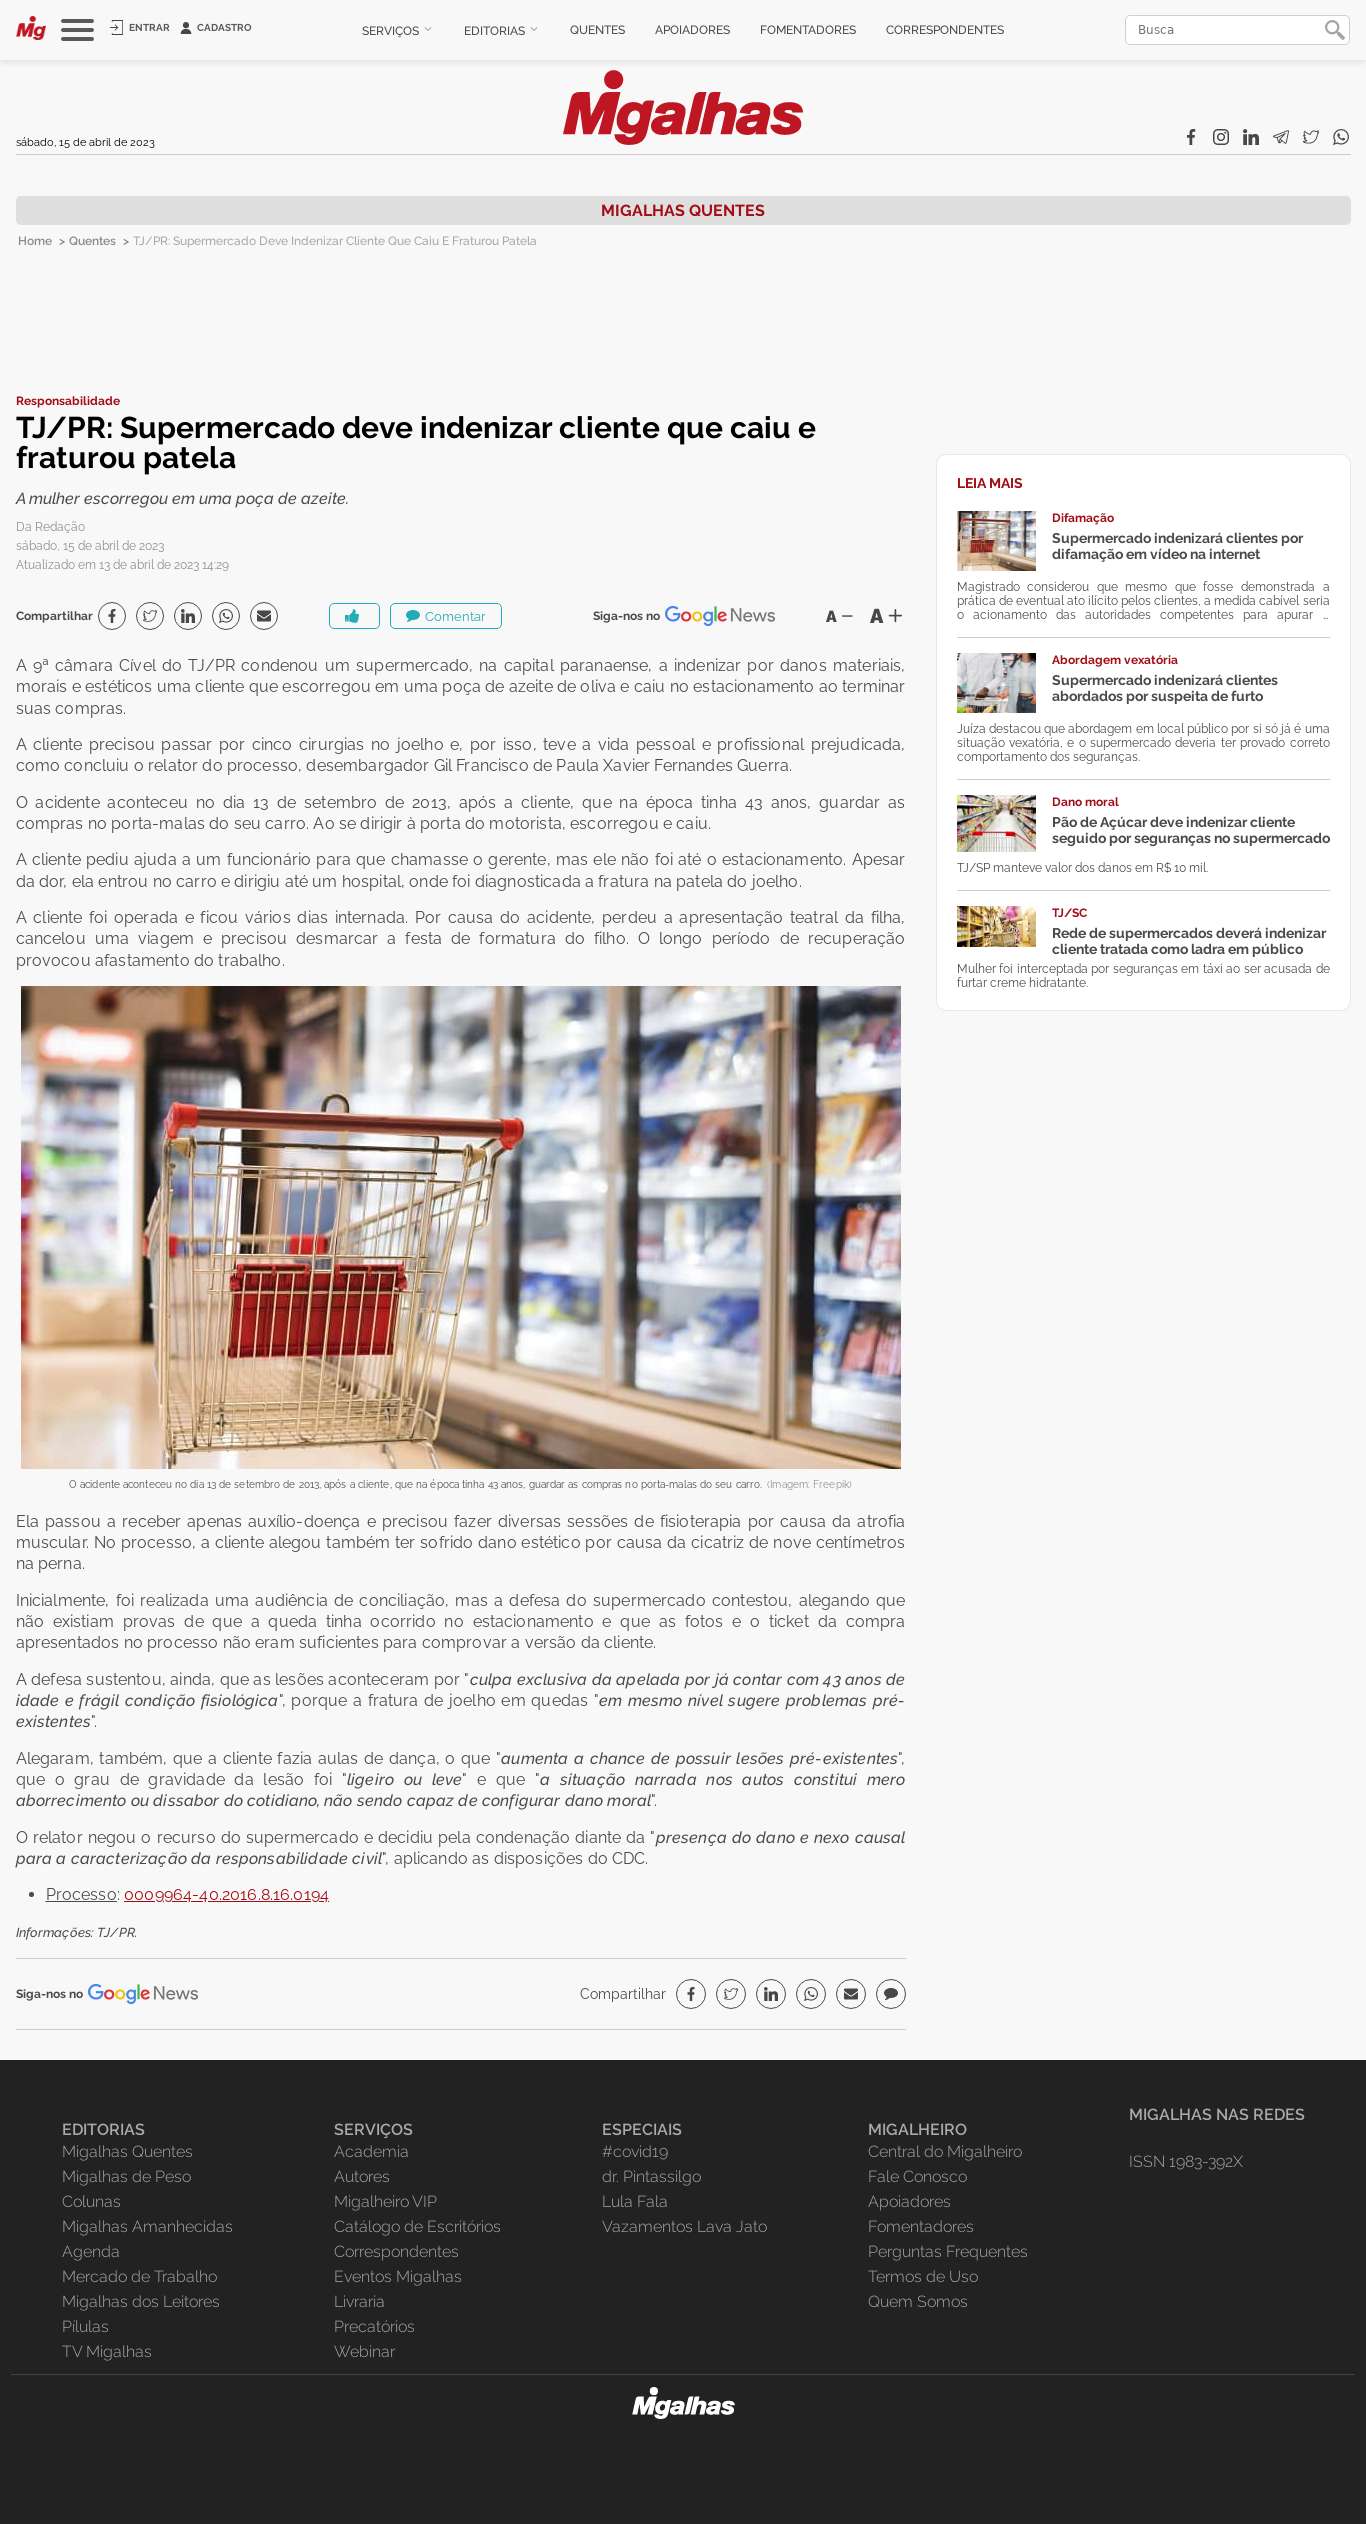 TJ/PR: Supermercado deve indenizar cliente que caiu e fraturou patela